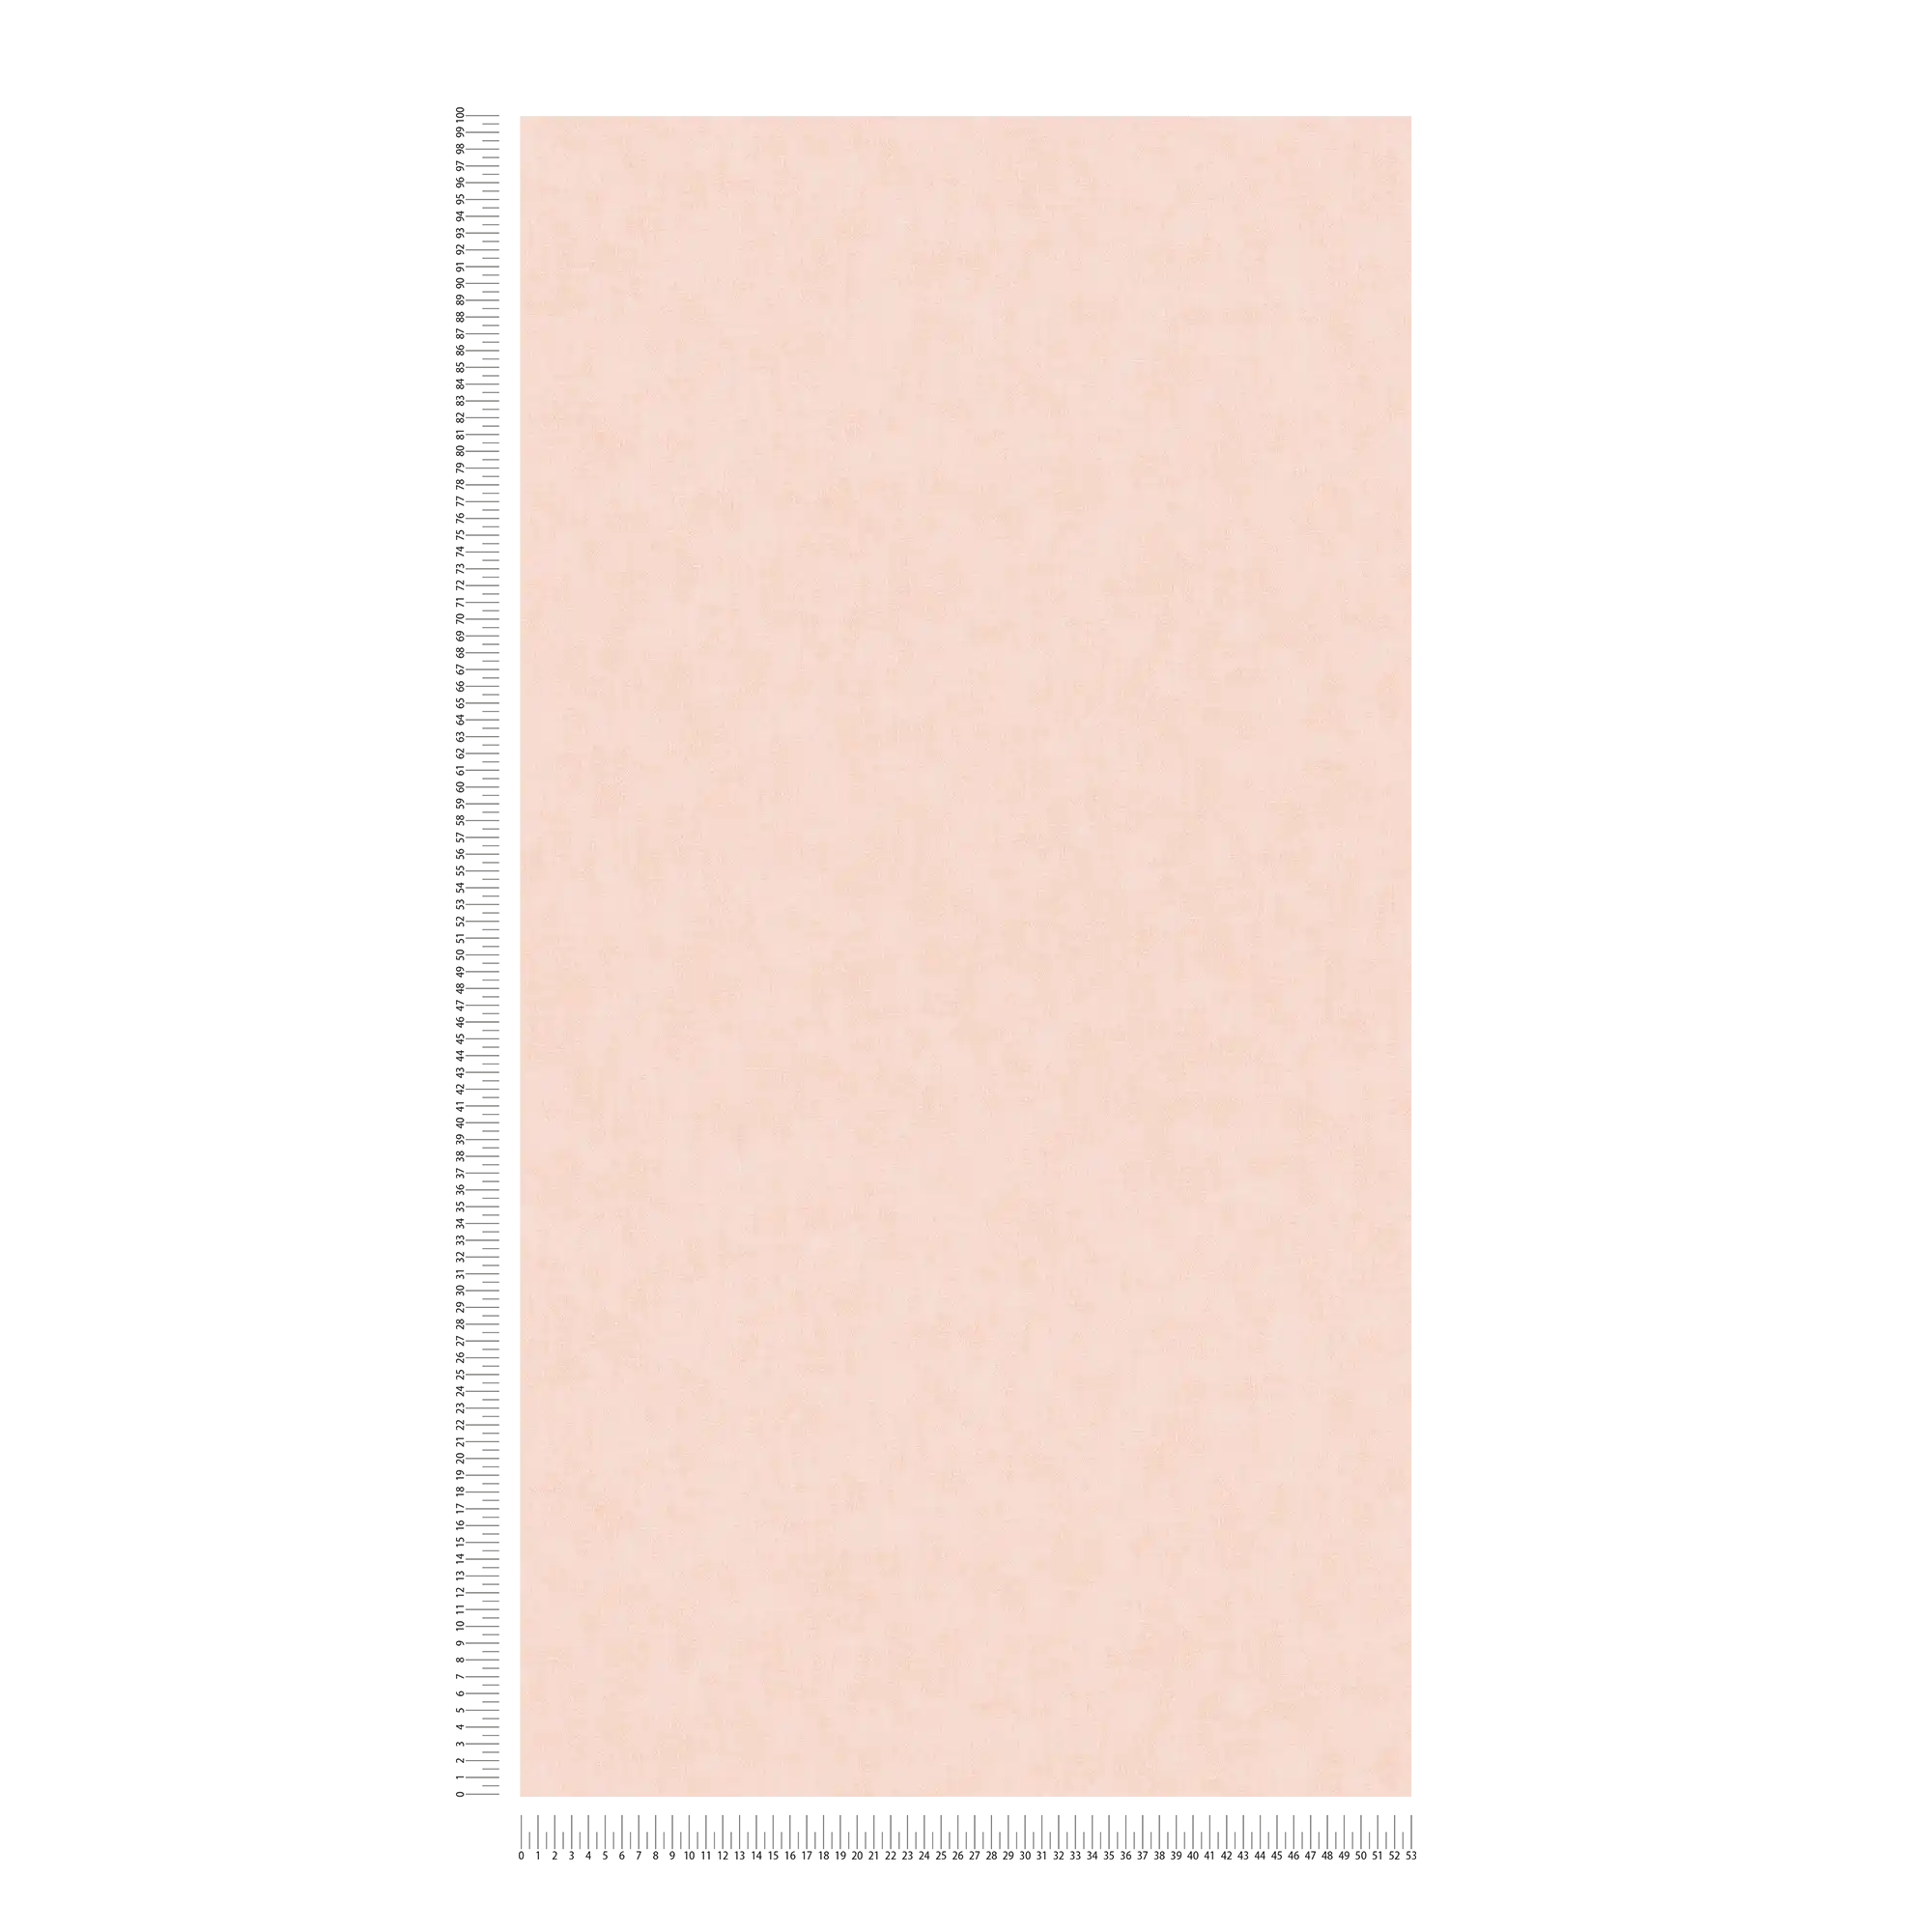             Papel pintado liso de estilo escandinavo con aspecto de lino - rosa
        